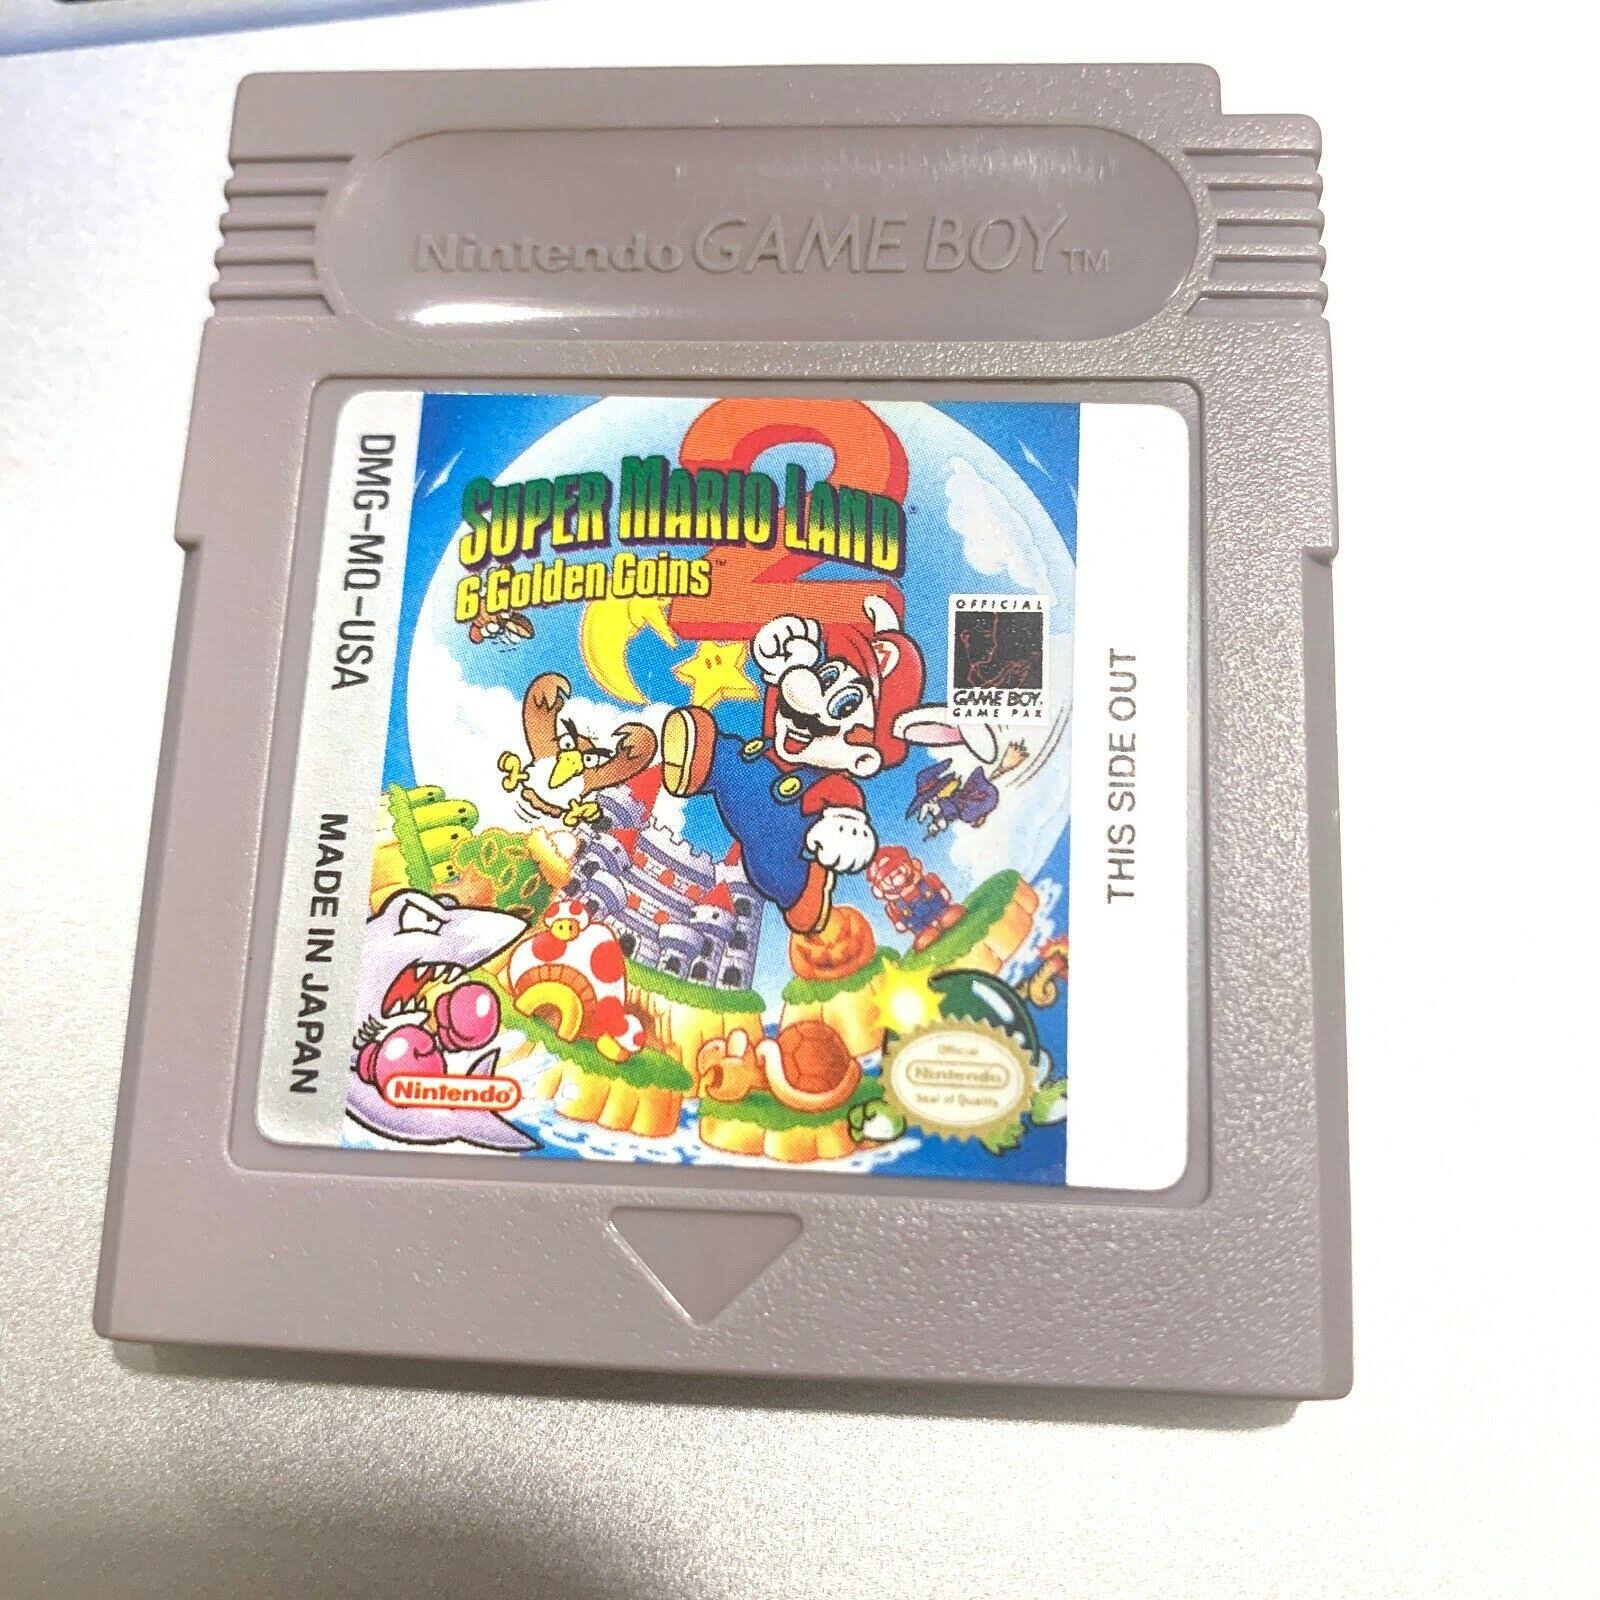 Super Mario Land 2: 6 Golden Coins - Nintendo Game Boy